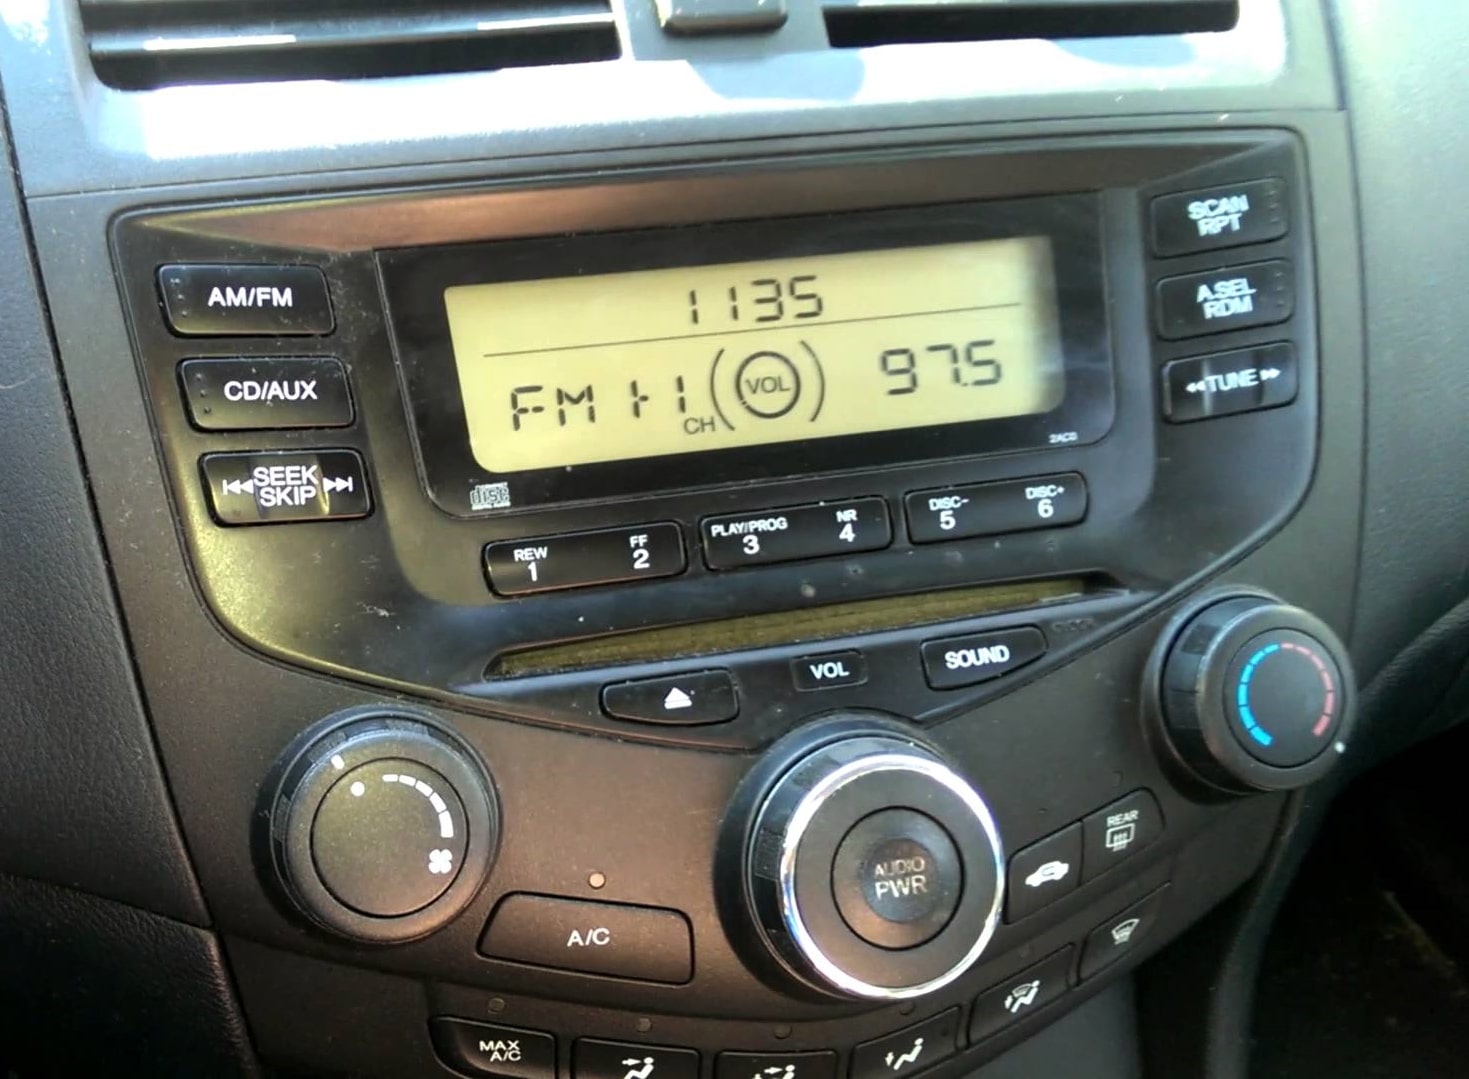 2006 Honda Accord Radio Code